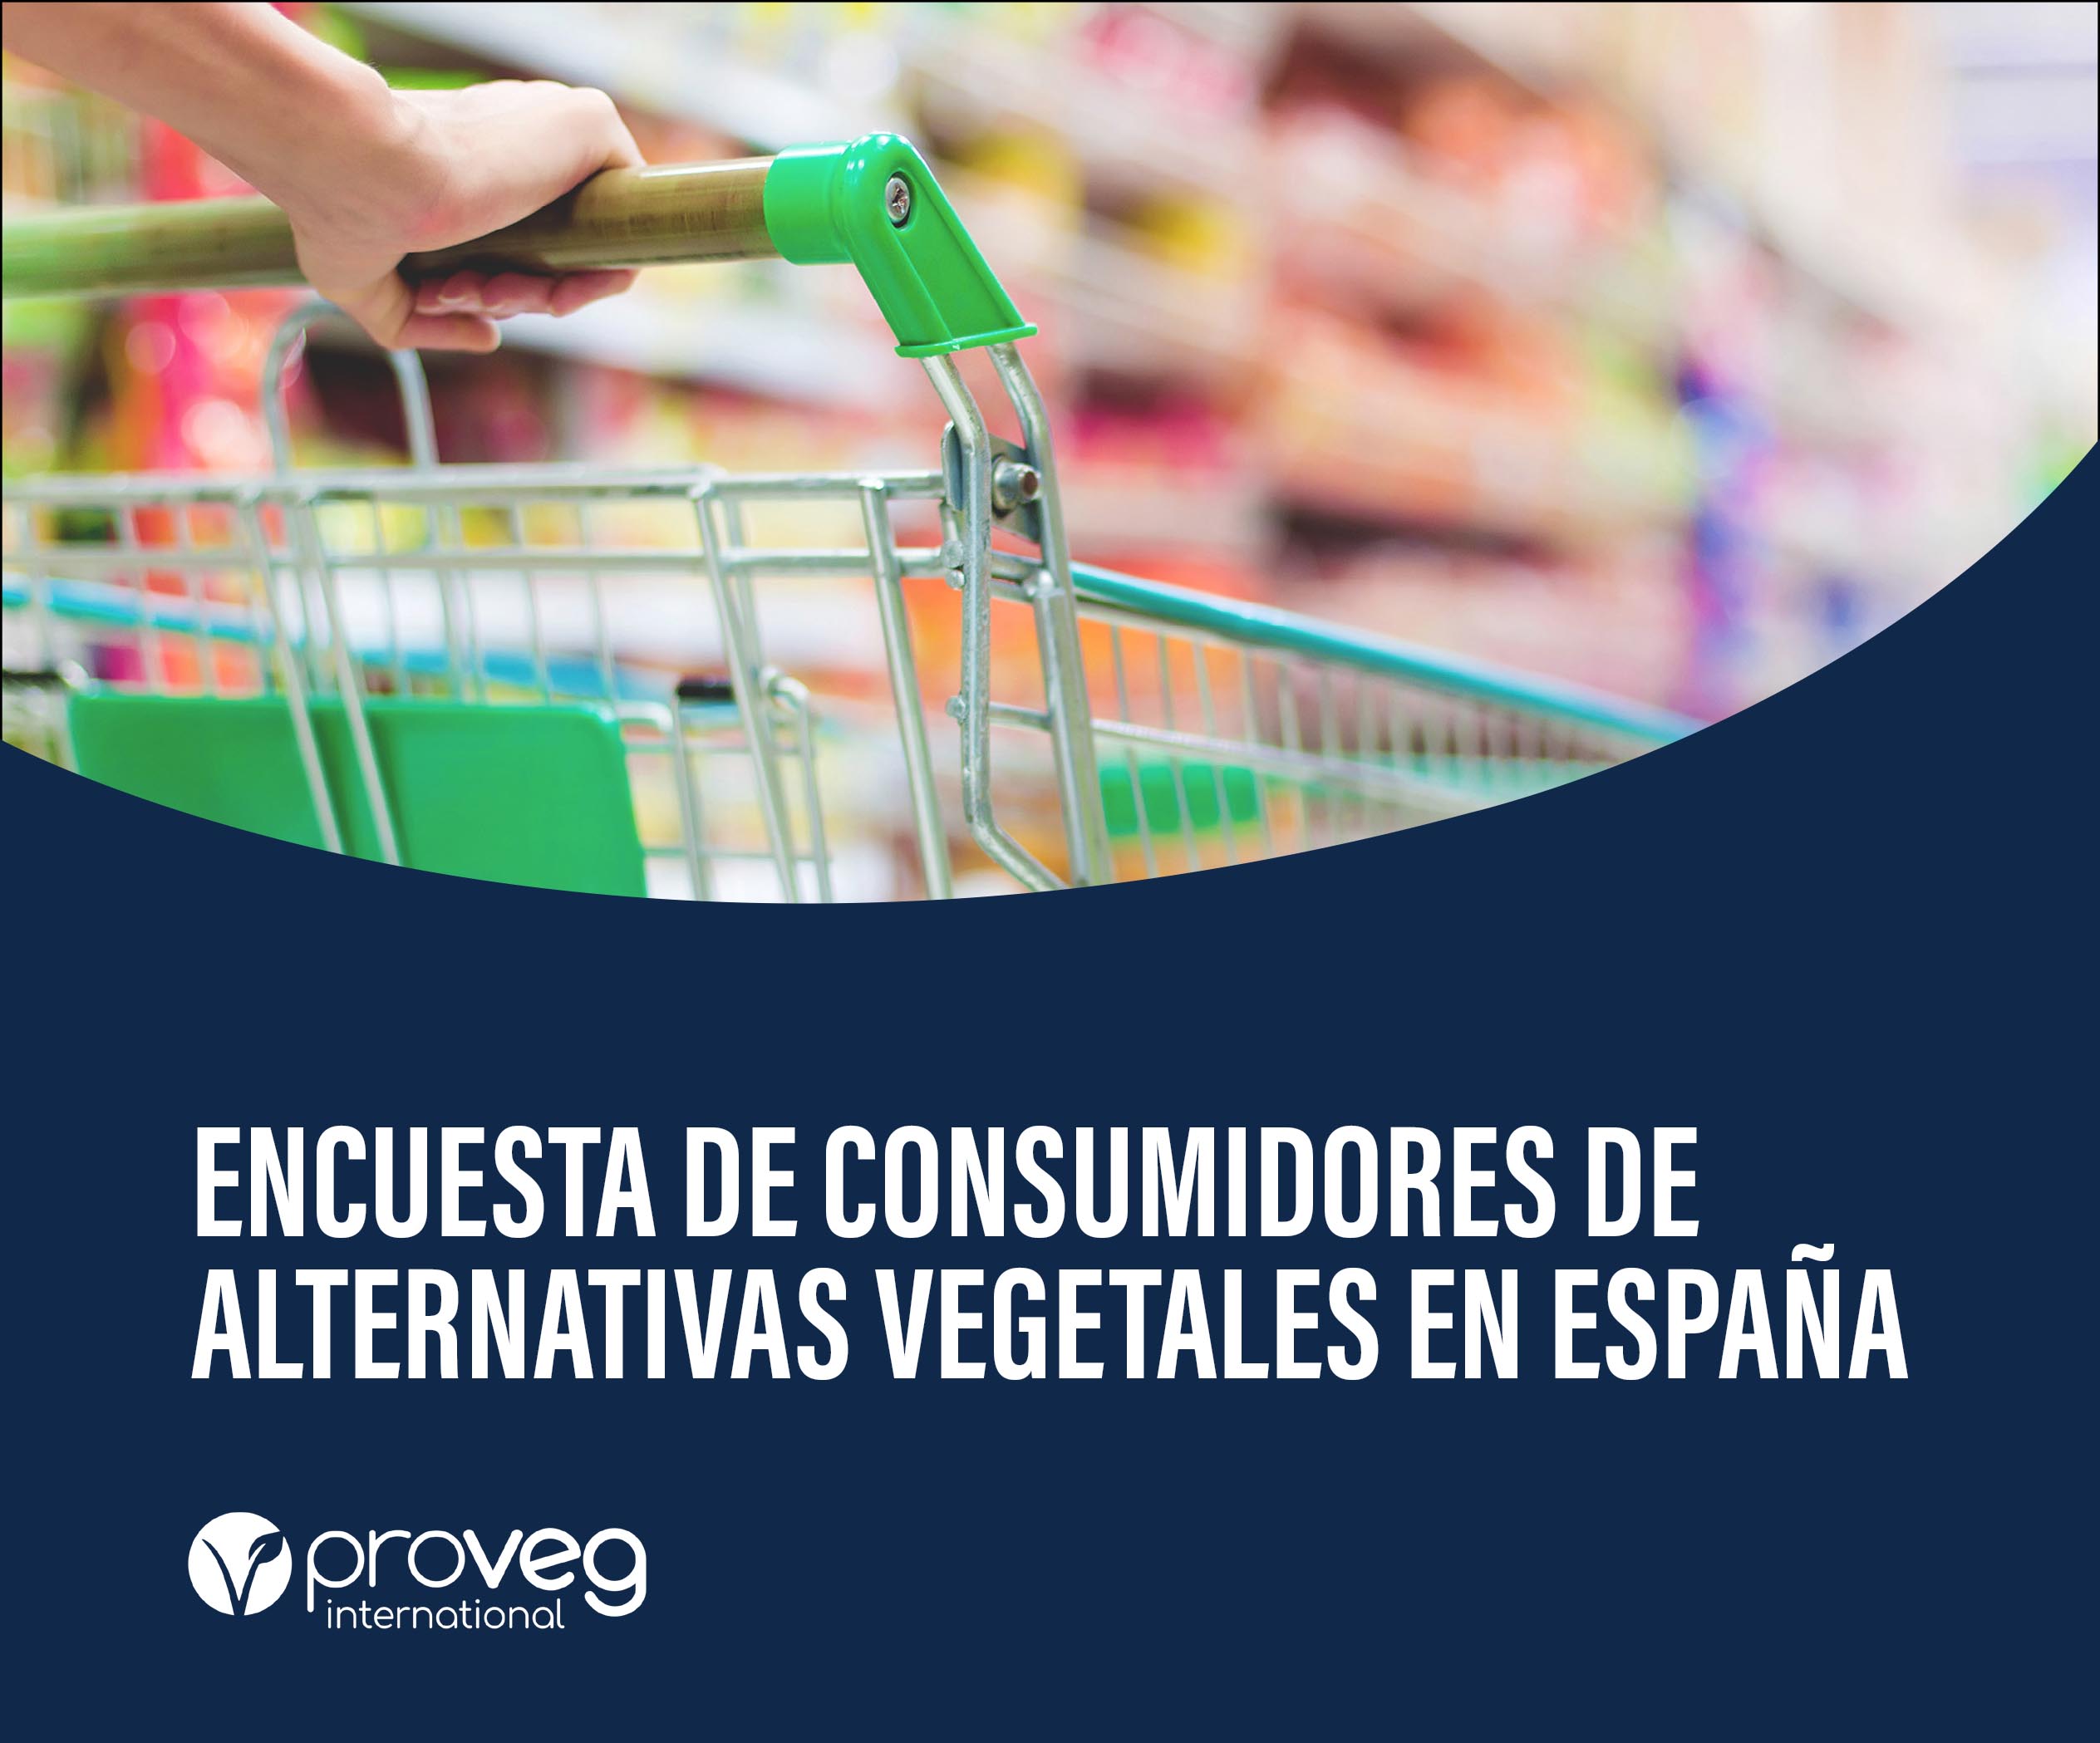 ¿Qué nos dice la Encuesta de consumidores de alternativas vegetales en España?